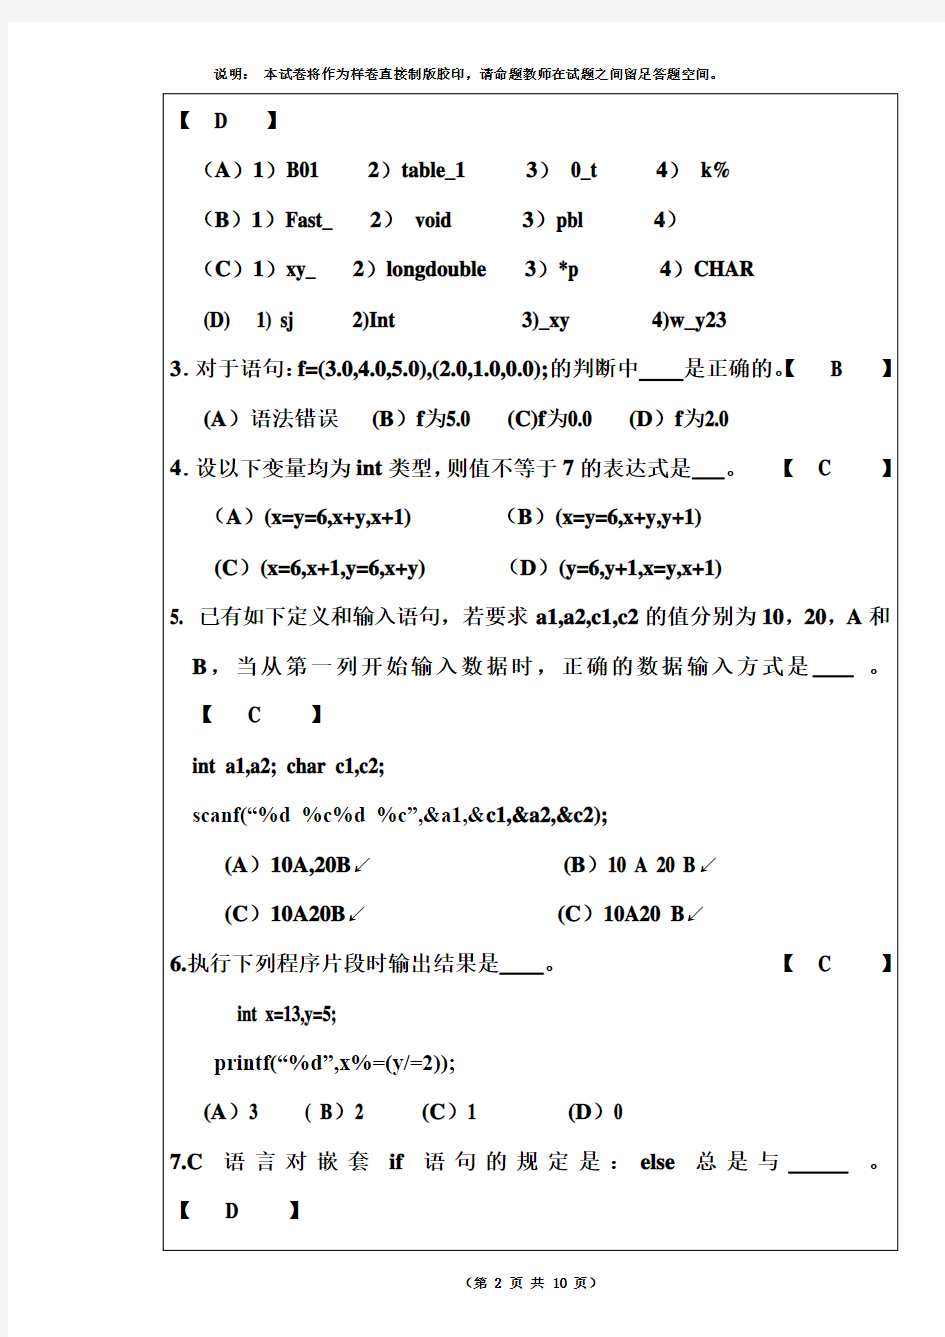 湘潭大学《C语言程序设计Ⅱ》课程考试试卷